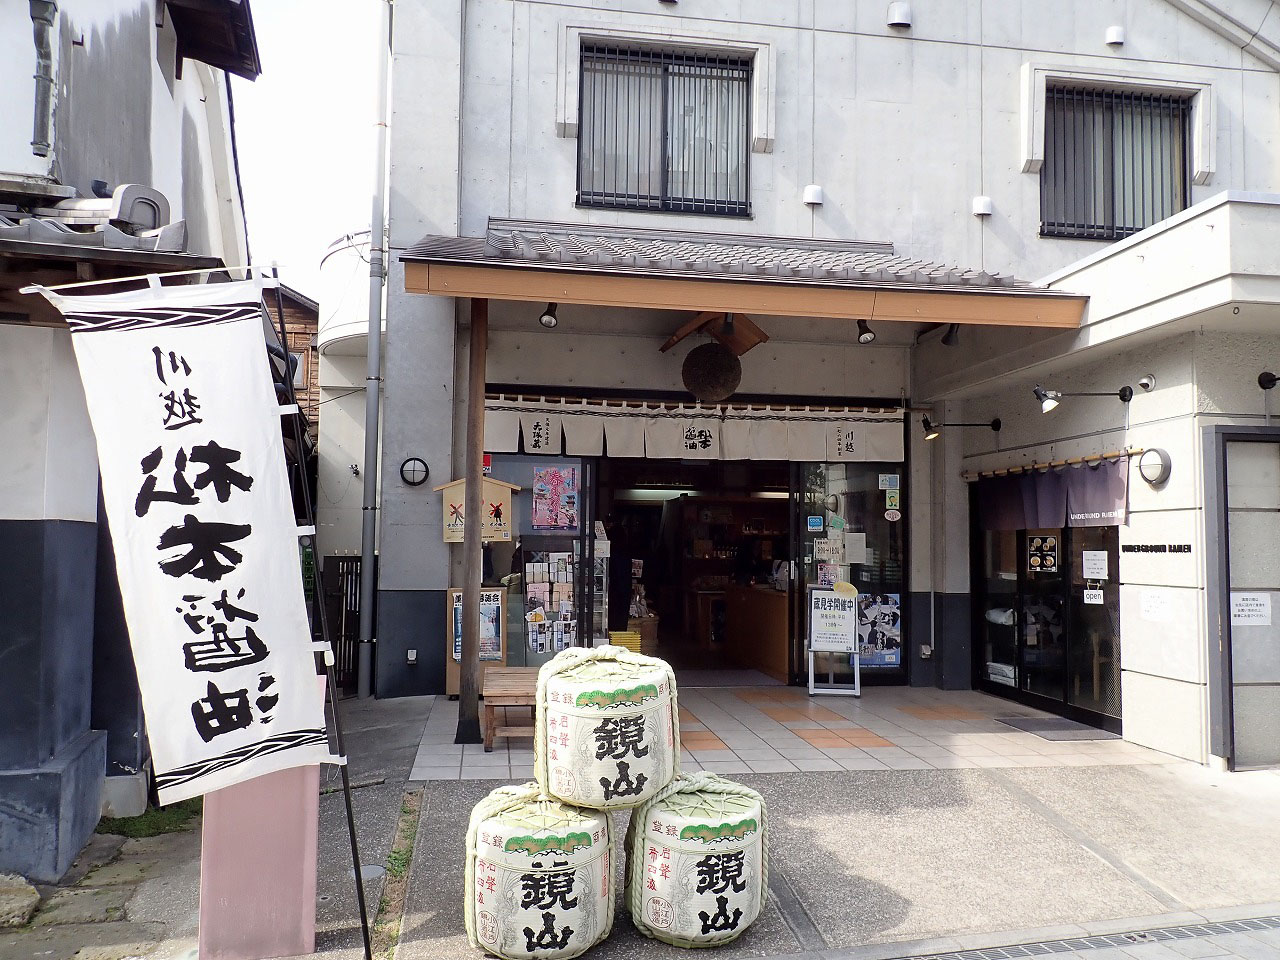 『じゅん散歩』で紹介された『松本醤油商店』の外観